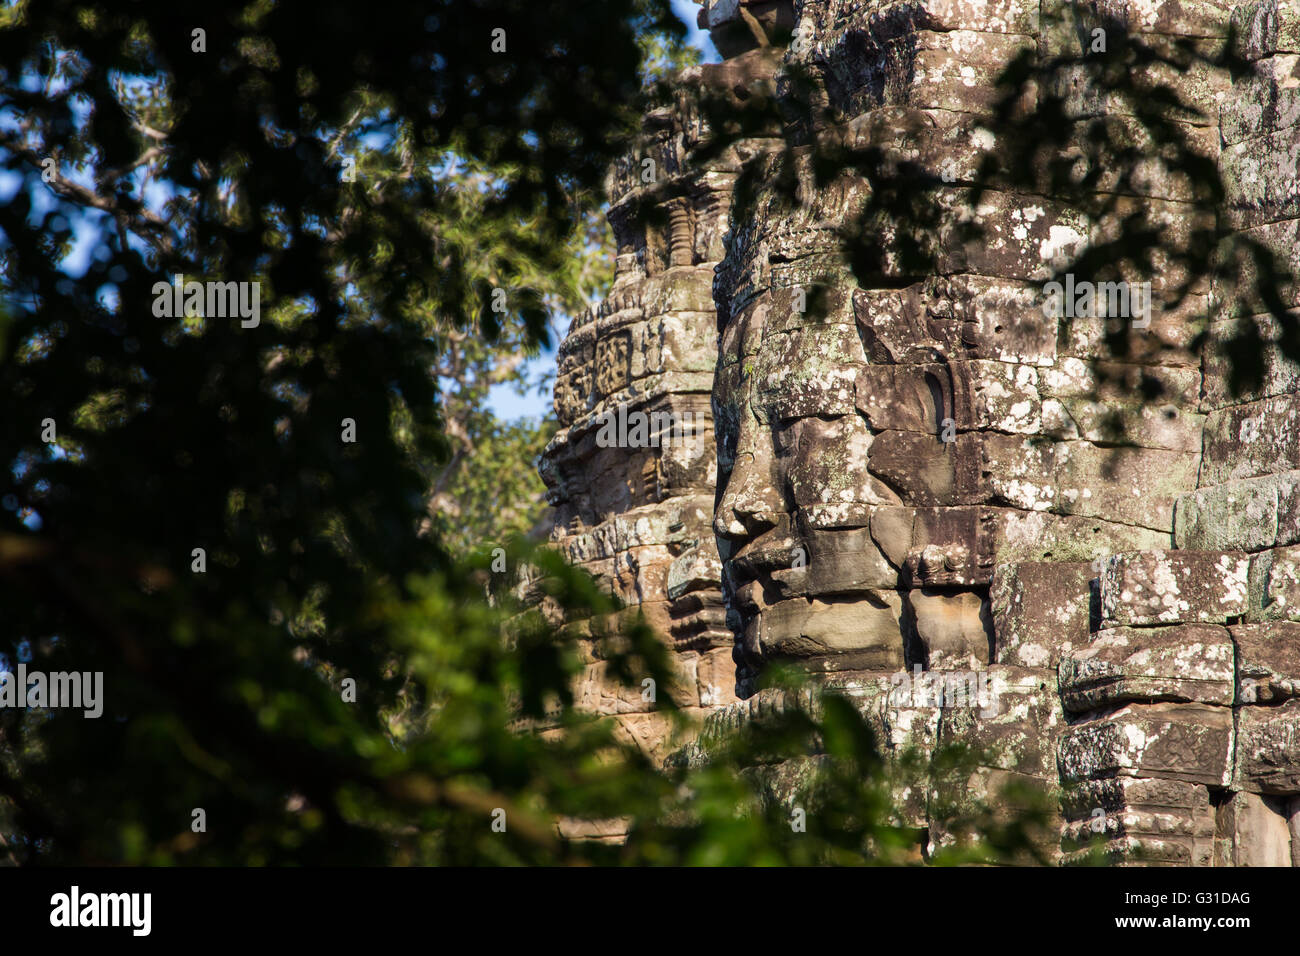 Ancien des Prasat temple Bayon et arbre cadre, Angkor Thom , est attraction touristique populaire à Siem Reap, Cambodge Banque D'Images